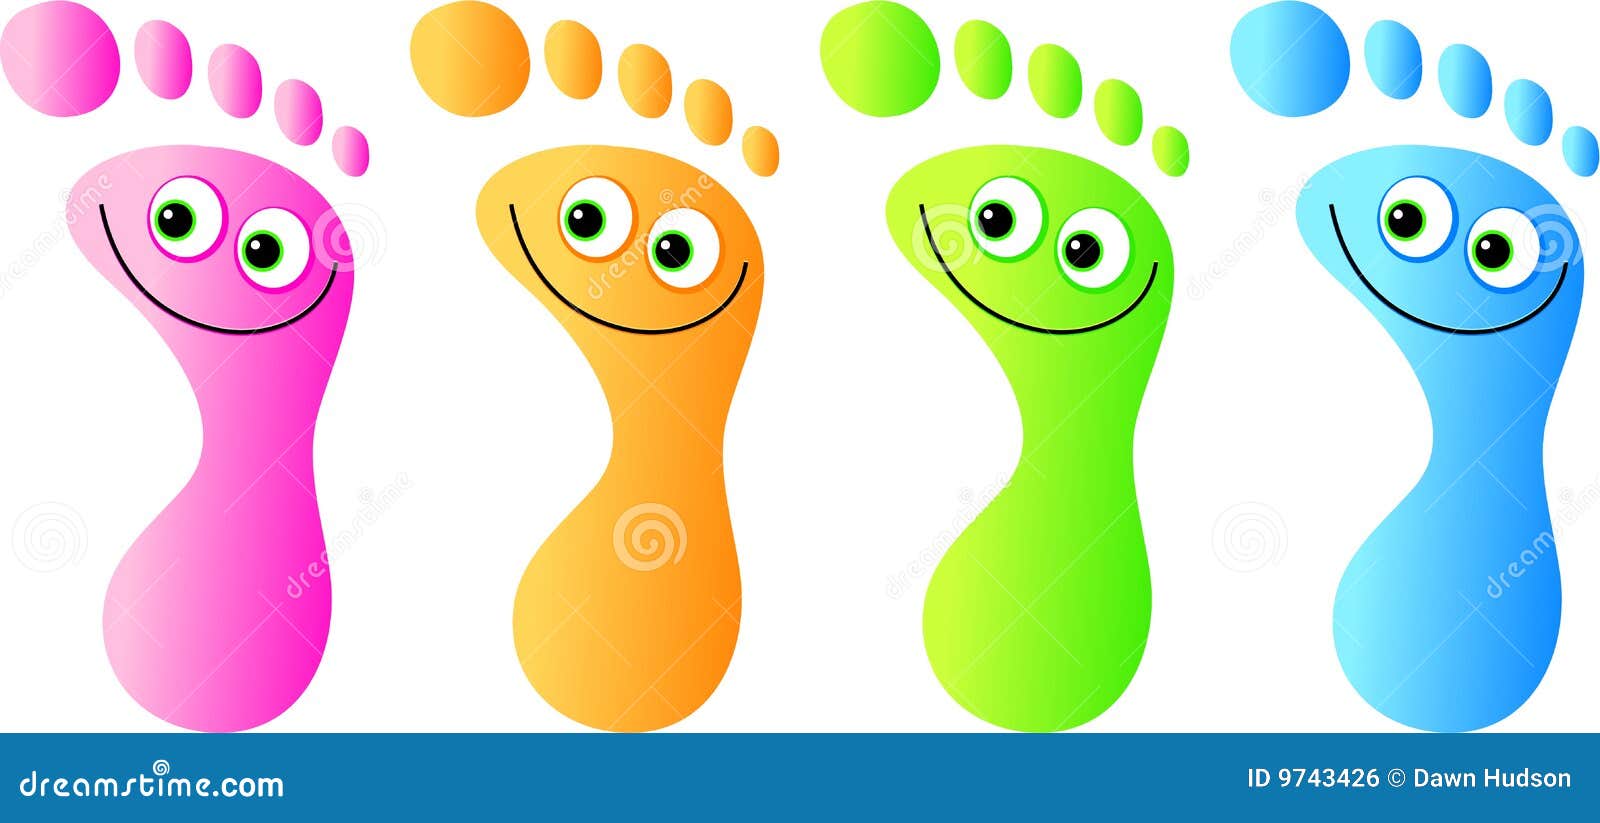 clipart happy feet - photo #24